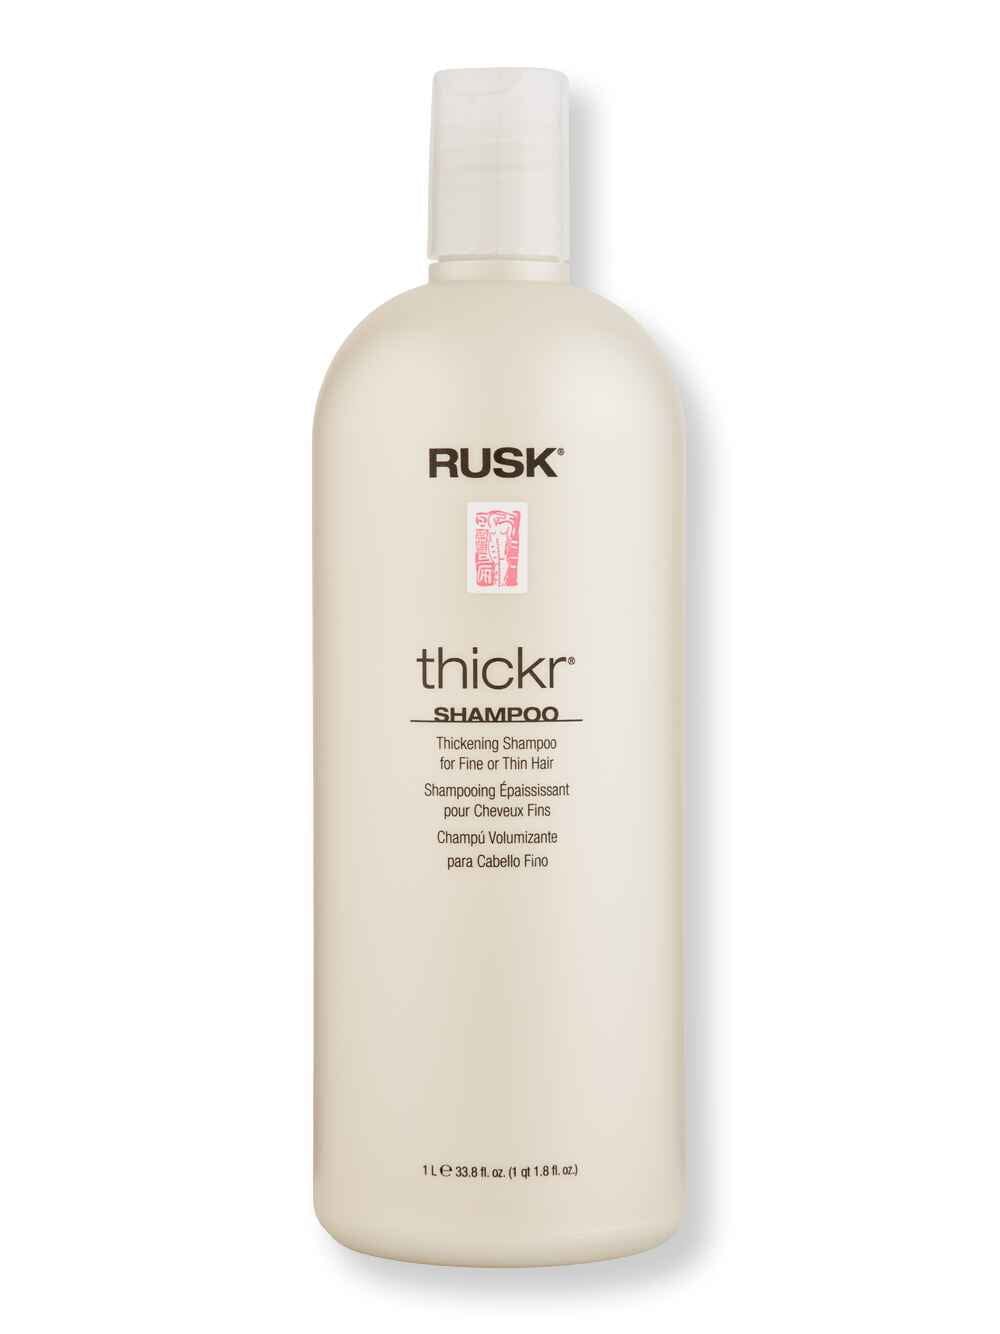 Rusk Rusk Thickr Thickening Shampoo 33.8 oz Shampoos 